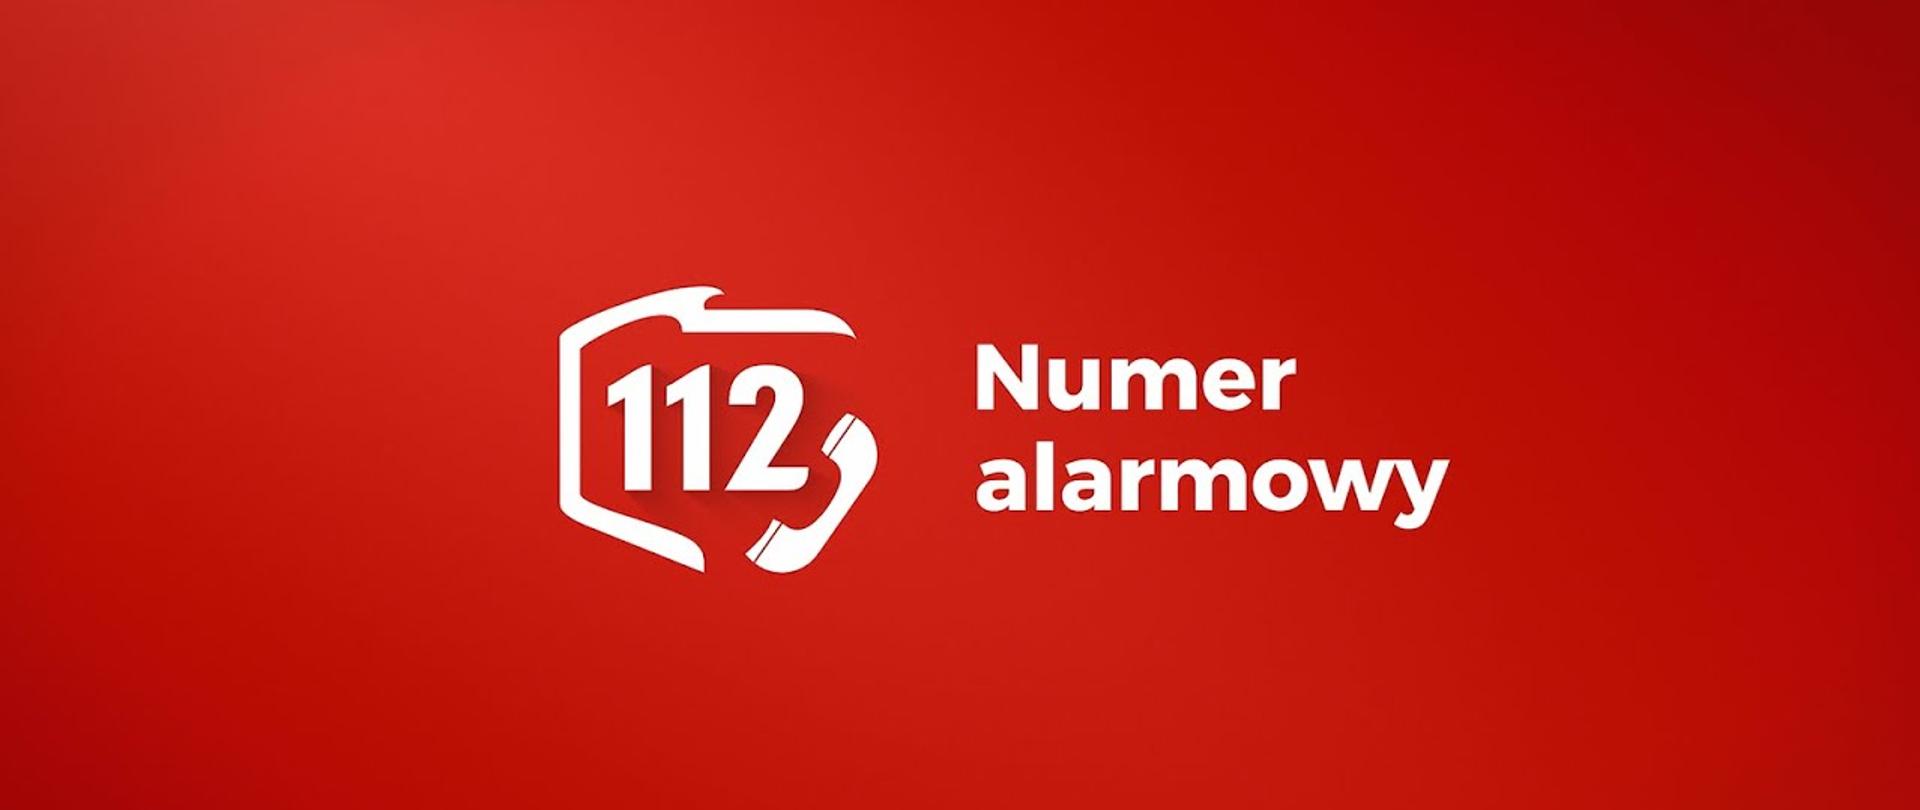 Czerwone logo ogólnoeuropejskiego numeru alarmowego 112 - numer 112 na czerwonym tle.